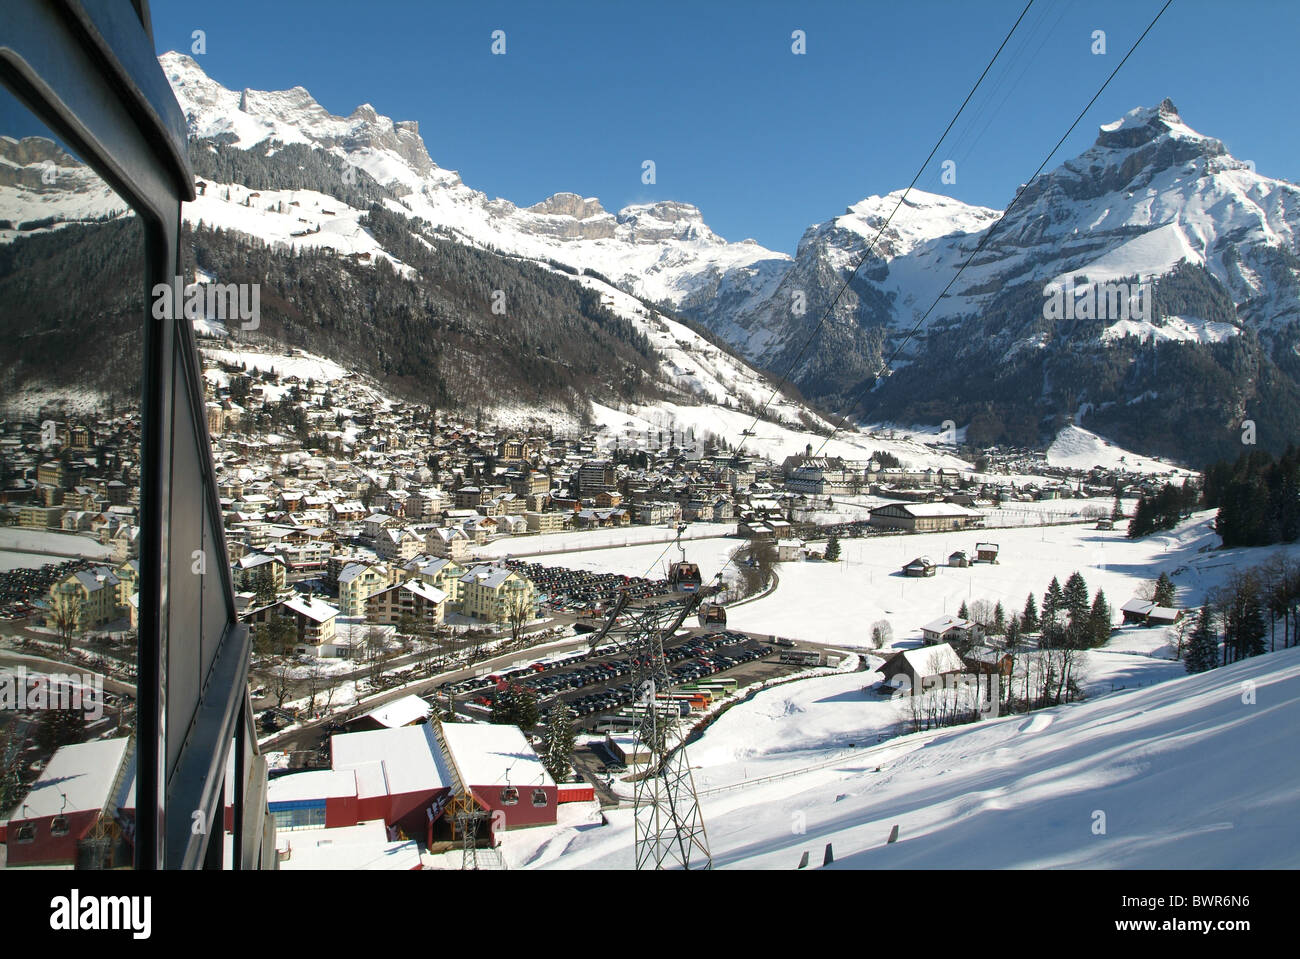 Svizzera Europa Engelberg Canton Obvaldo inverno sport invernali neve villaggio ferroviario Monte Alpi Hahnen mo Foto Stock